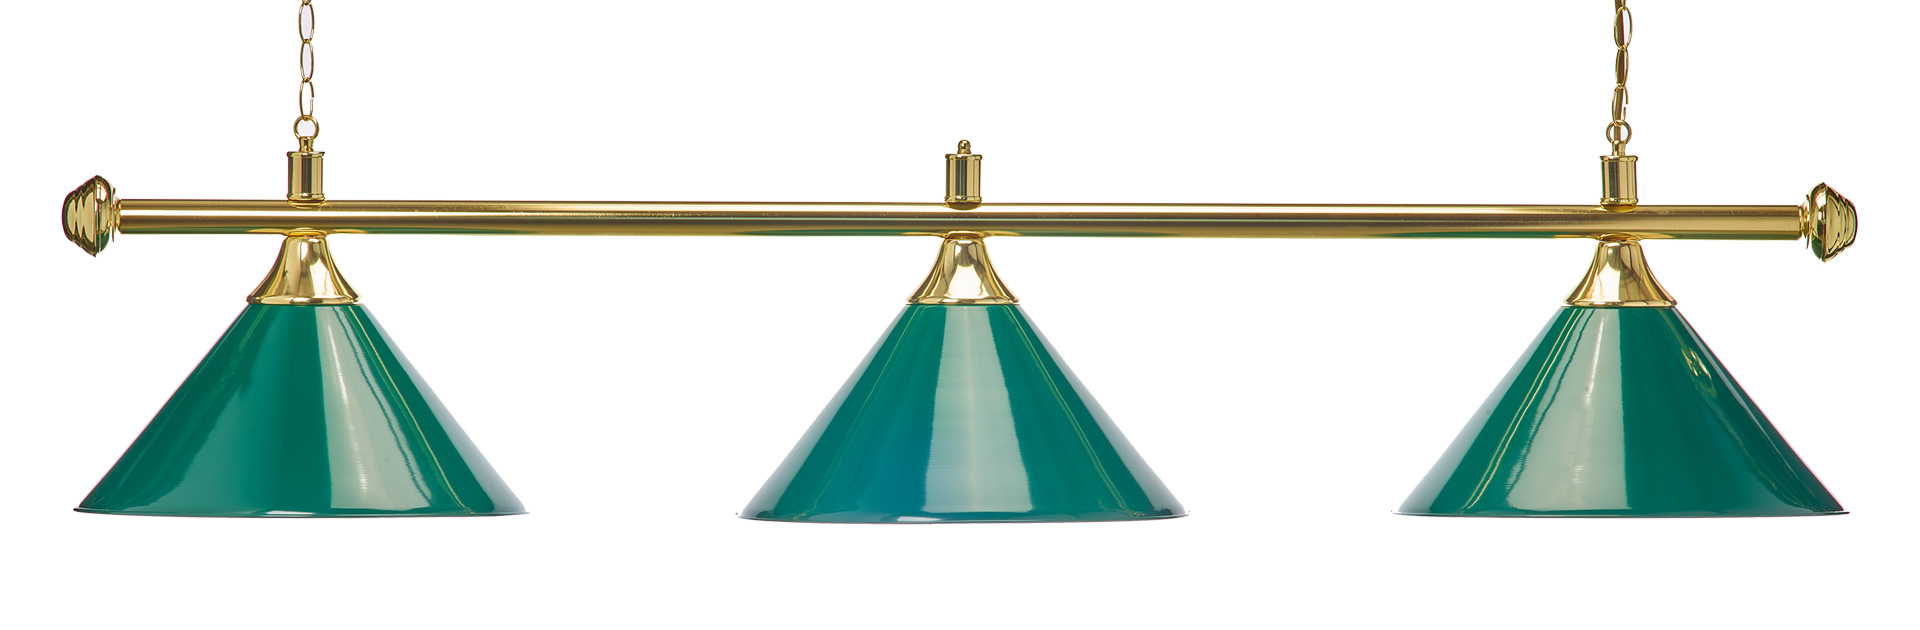 silberfarbene Halterung Billardlampe 3 Schirme silber mit Glas 